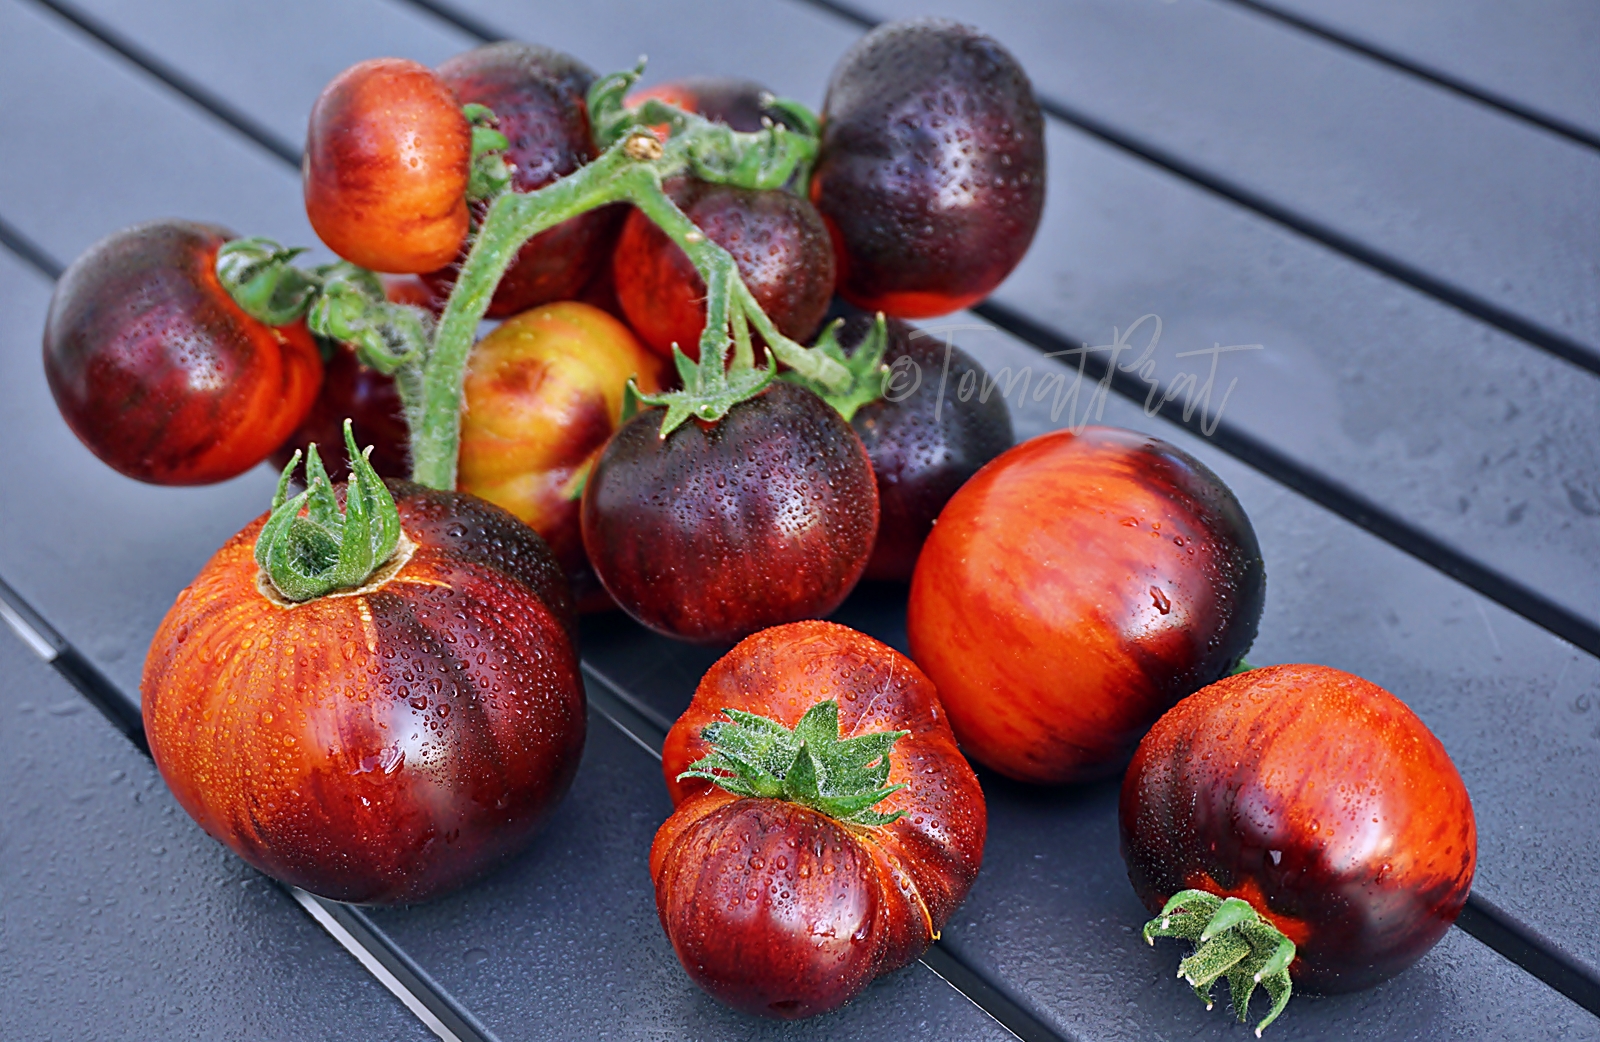 Характеристика и описание сортов томатов серии гном томатный, его урожайность